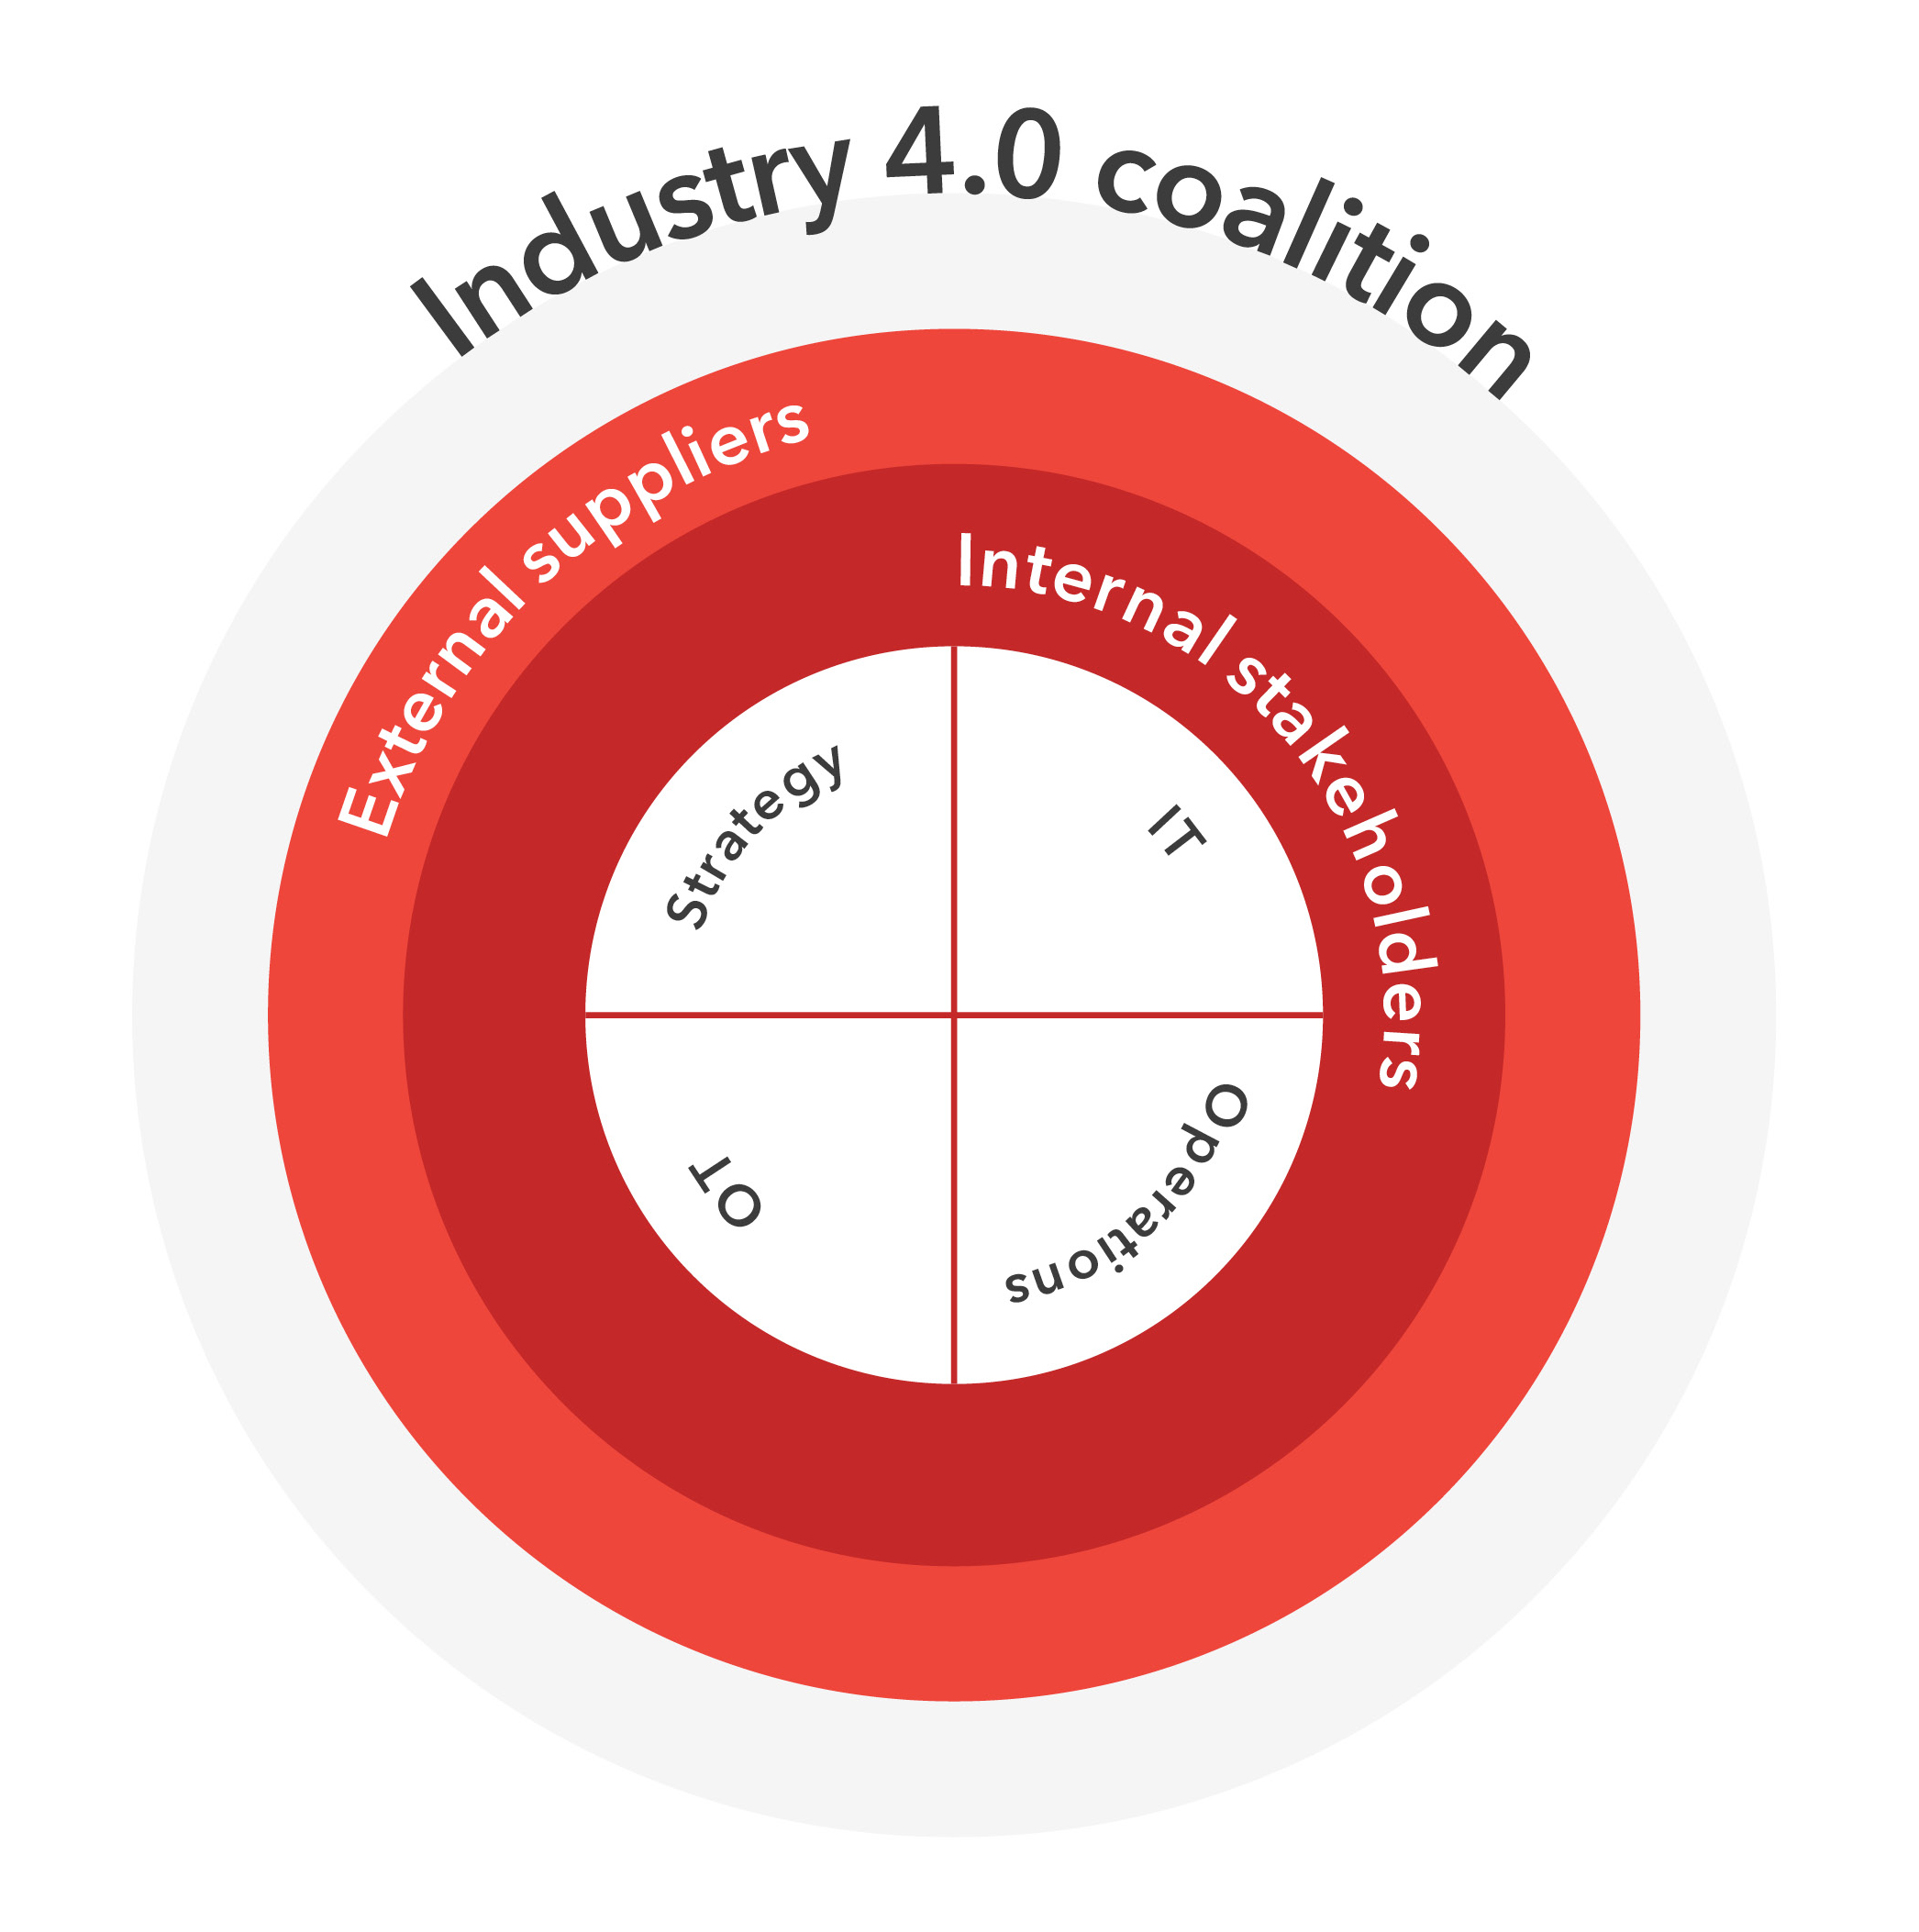 industry 4 0 roadmap fig 1